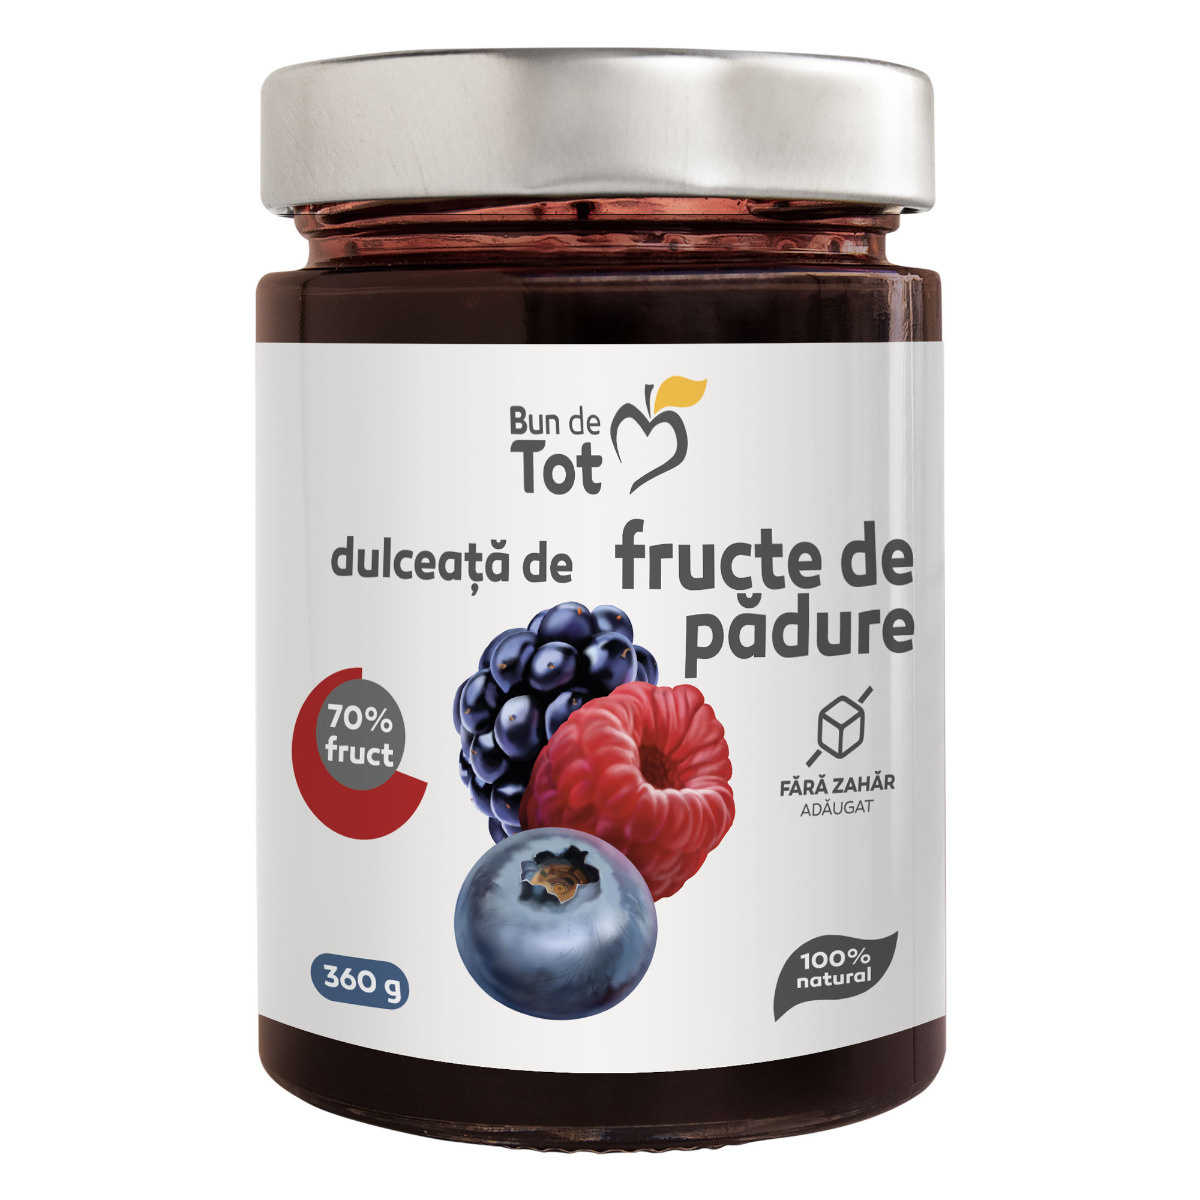 Bun de Tot Fructe de Padure dulceata fara zahar – 360g Bun de Tot imagine noua